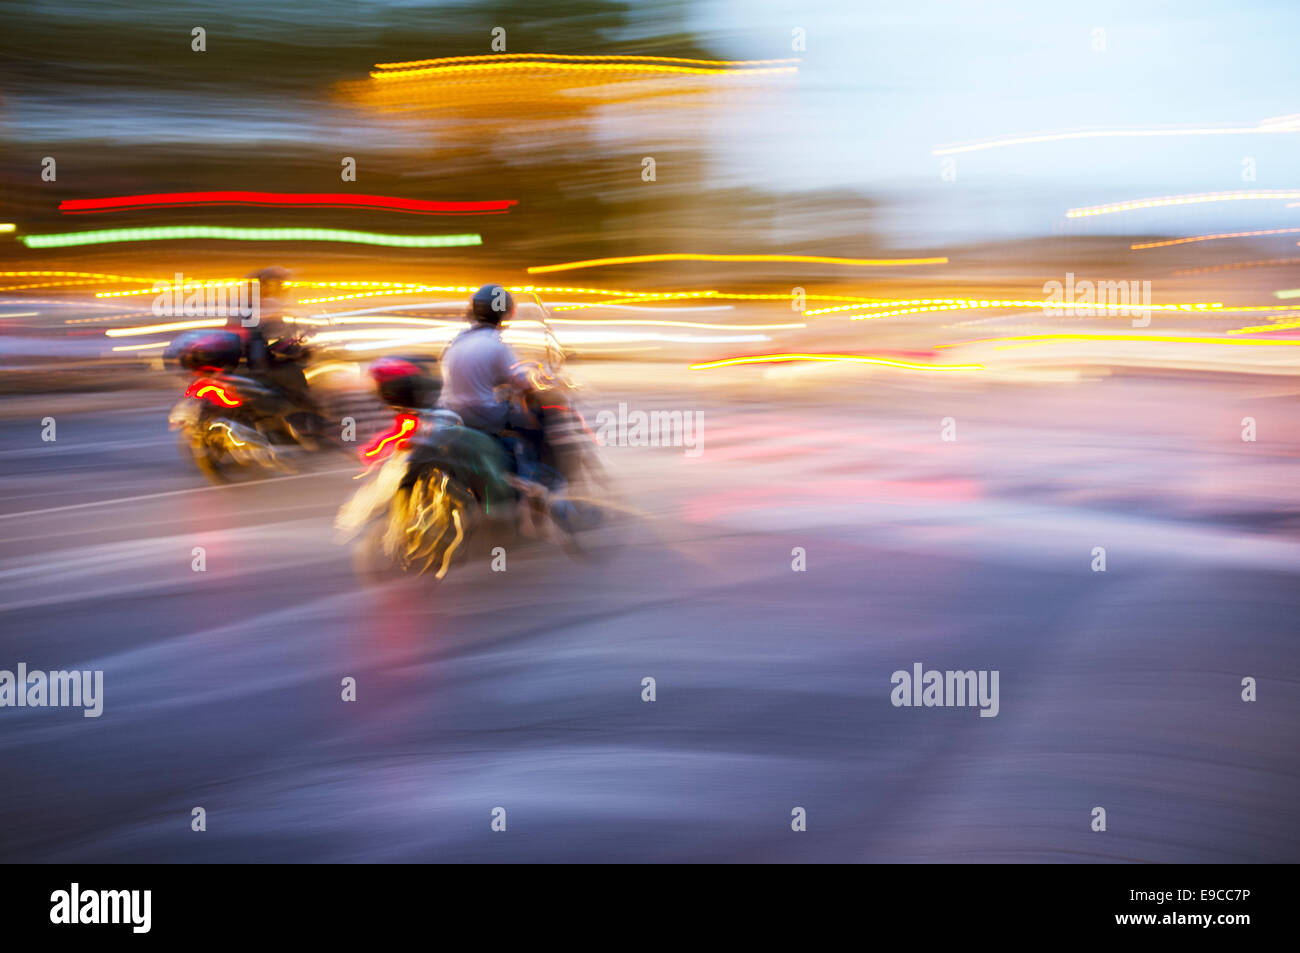 Abstrakte verschwommenes Bild von einem Roller fahren bei Nacht. Stockfoto